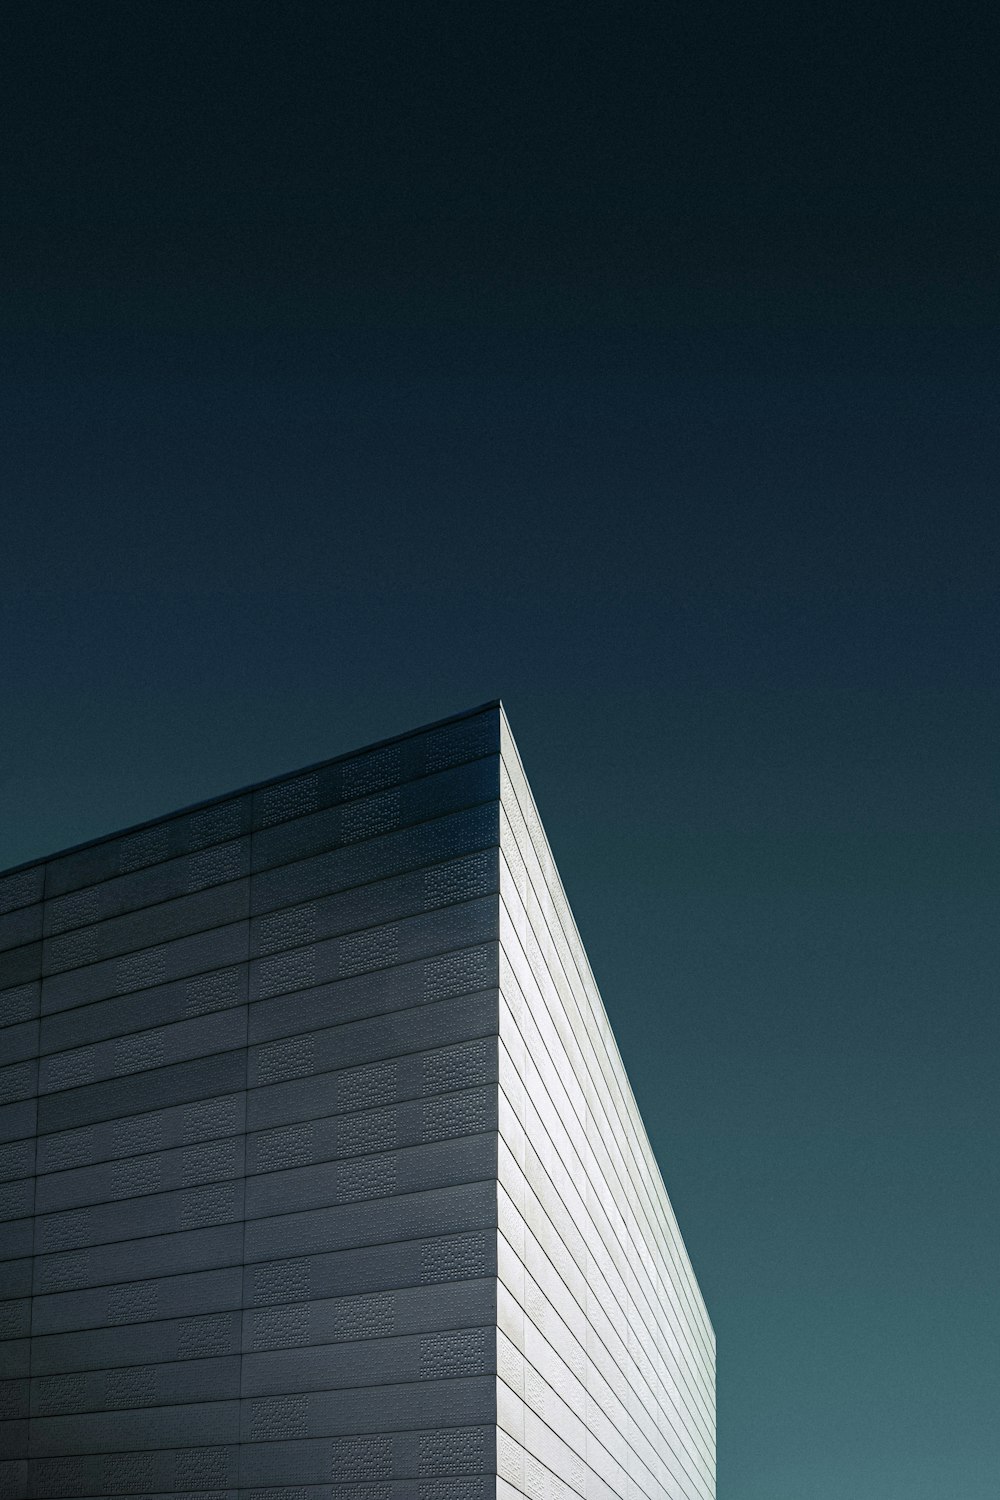 푸른 하늘 아래 흰색 콘크리트 건물의 로우 앵글 사진